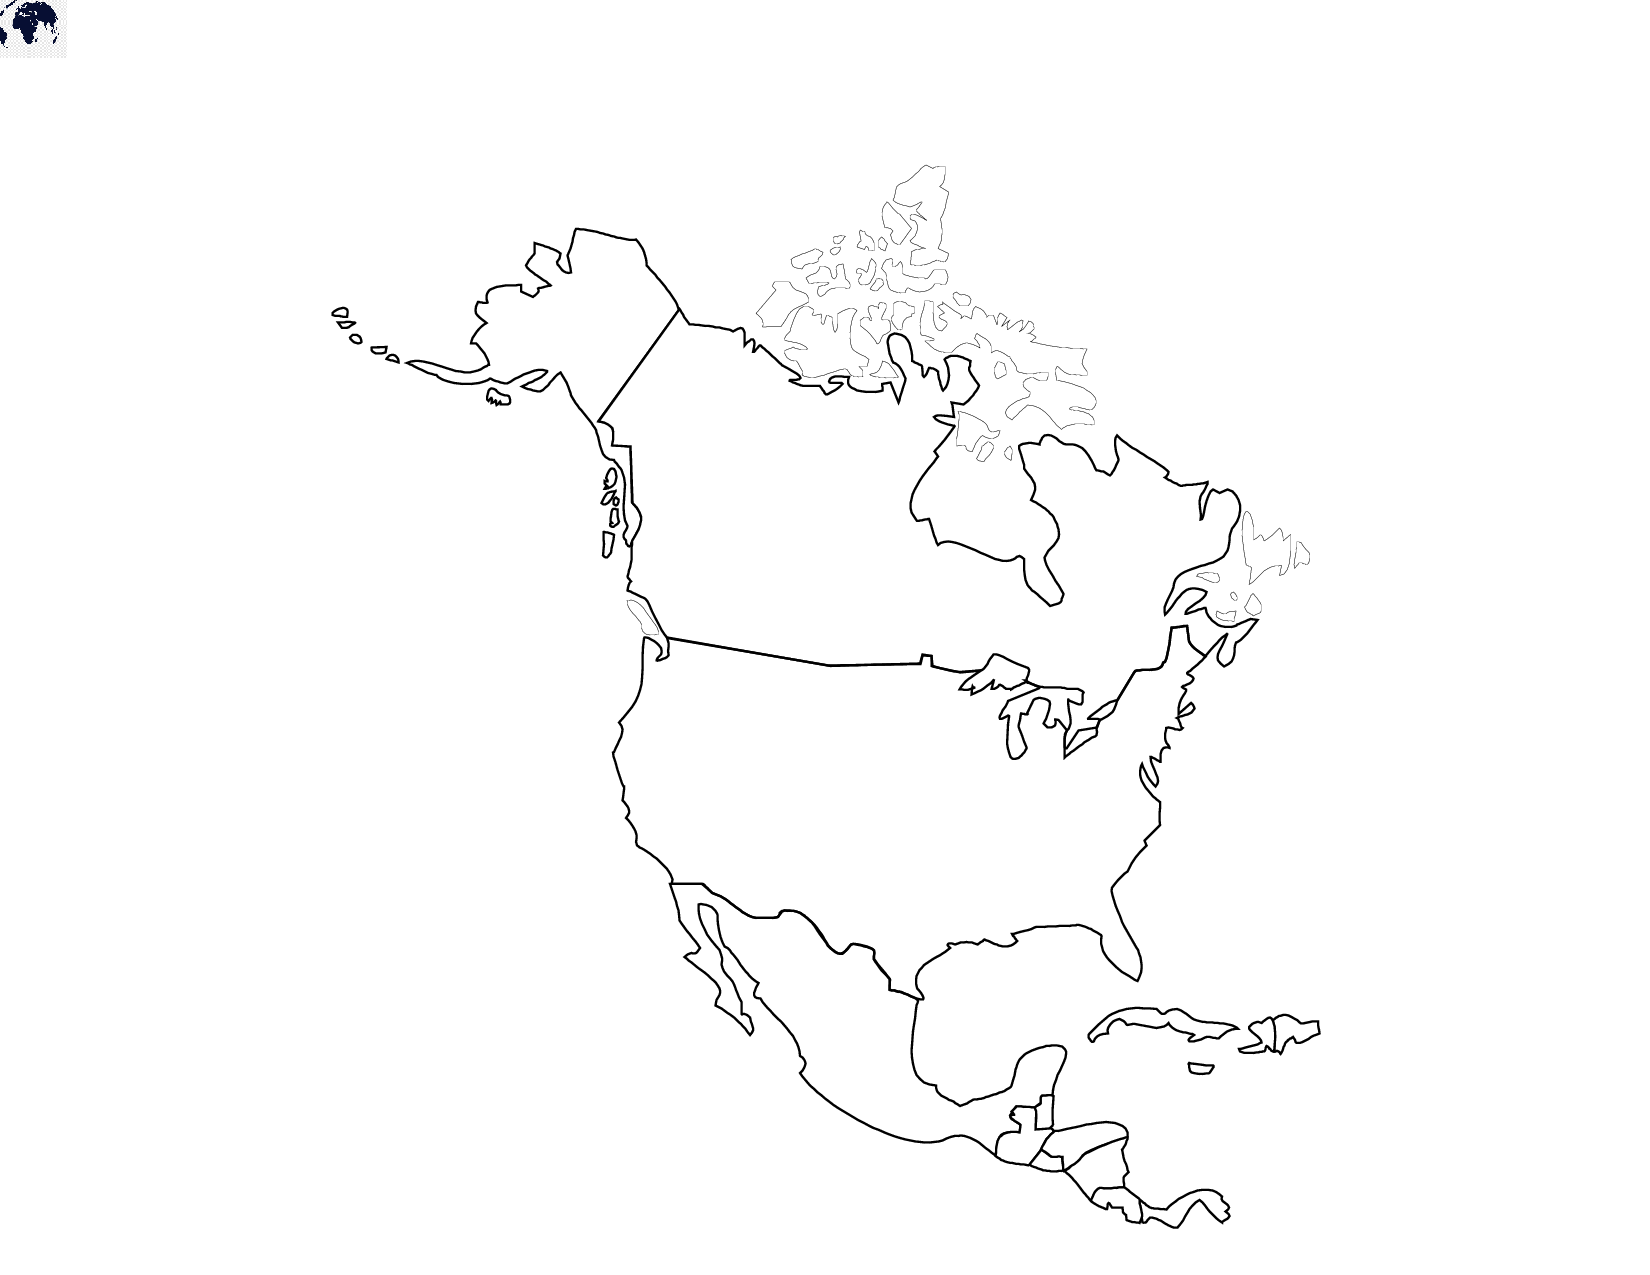 Северная америка рисунок материка. Политическая карта Северной Америки контурная карта для печати. Политическая контурная карта Северной Америки. Контурная ката Северной Омерики\. Карта Северной Америки контурная карта.